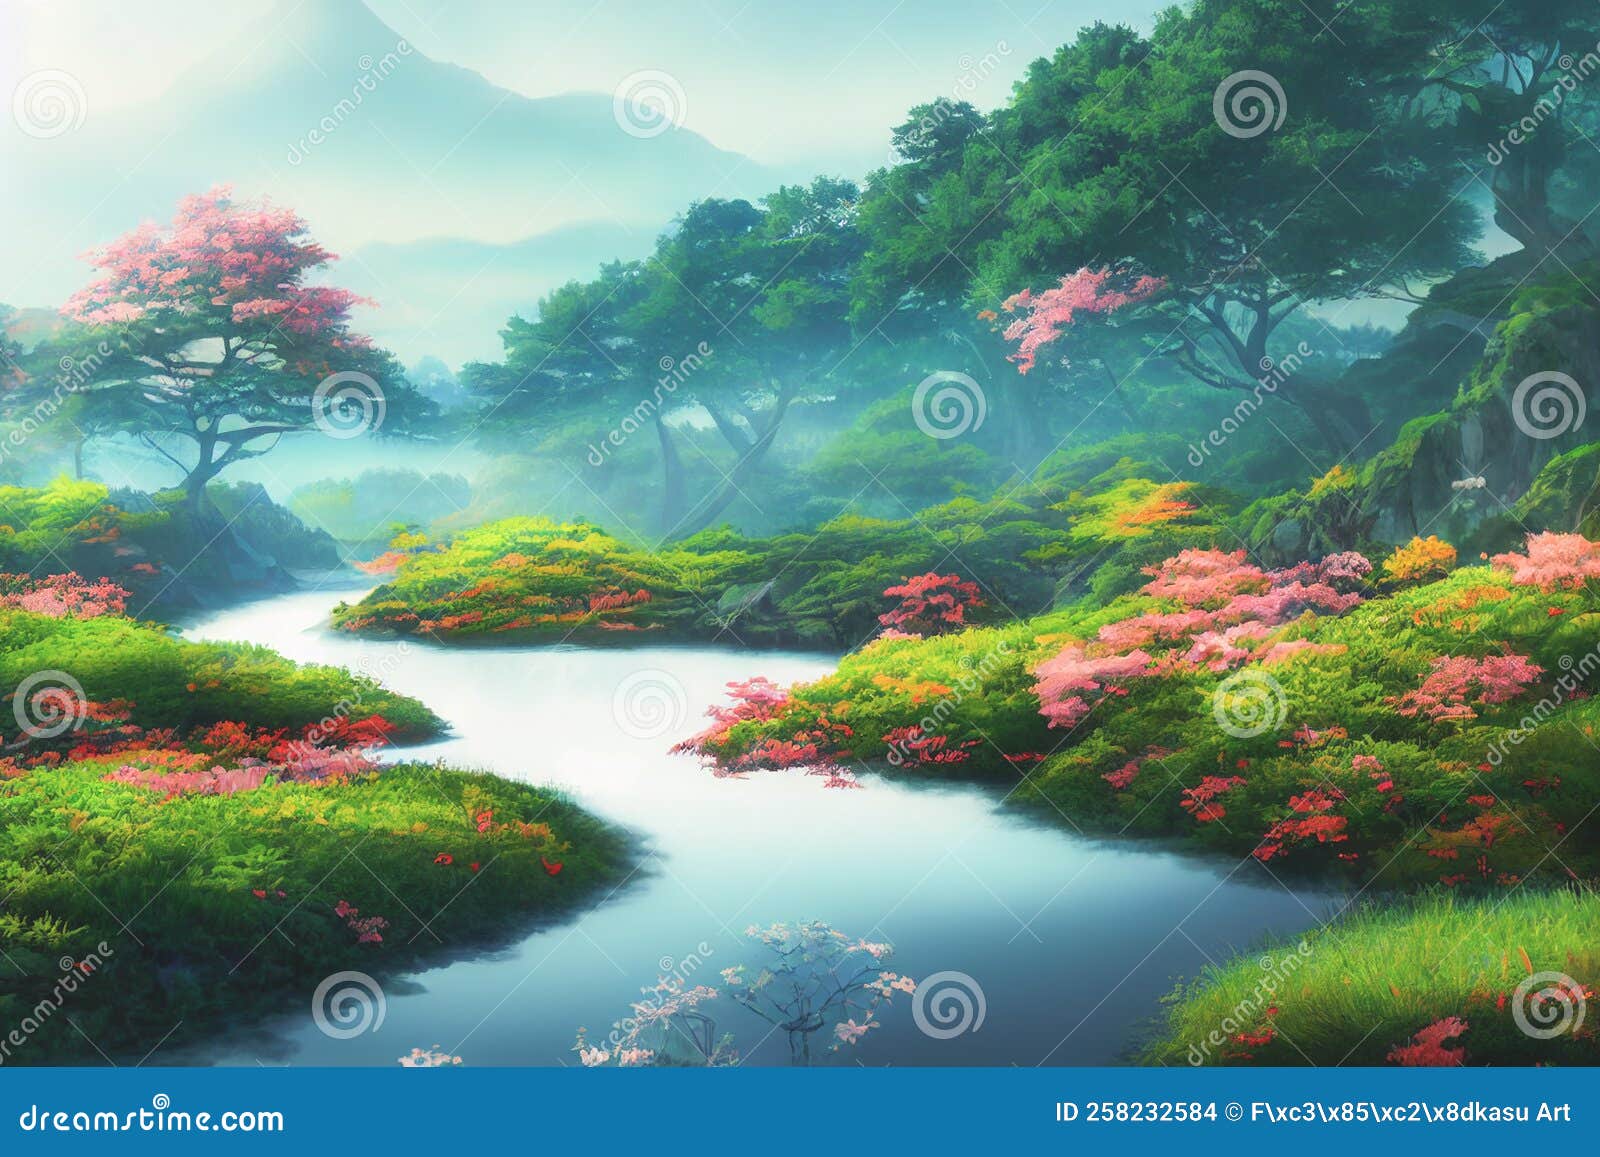 Mount Fuji Sunny Day Japanese Mountain Landscape Anime Artwork - Etsy